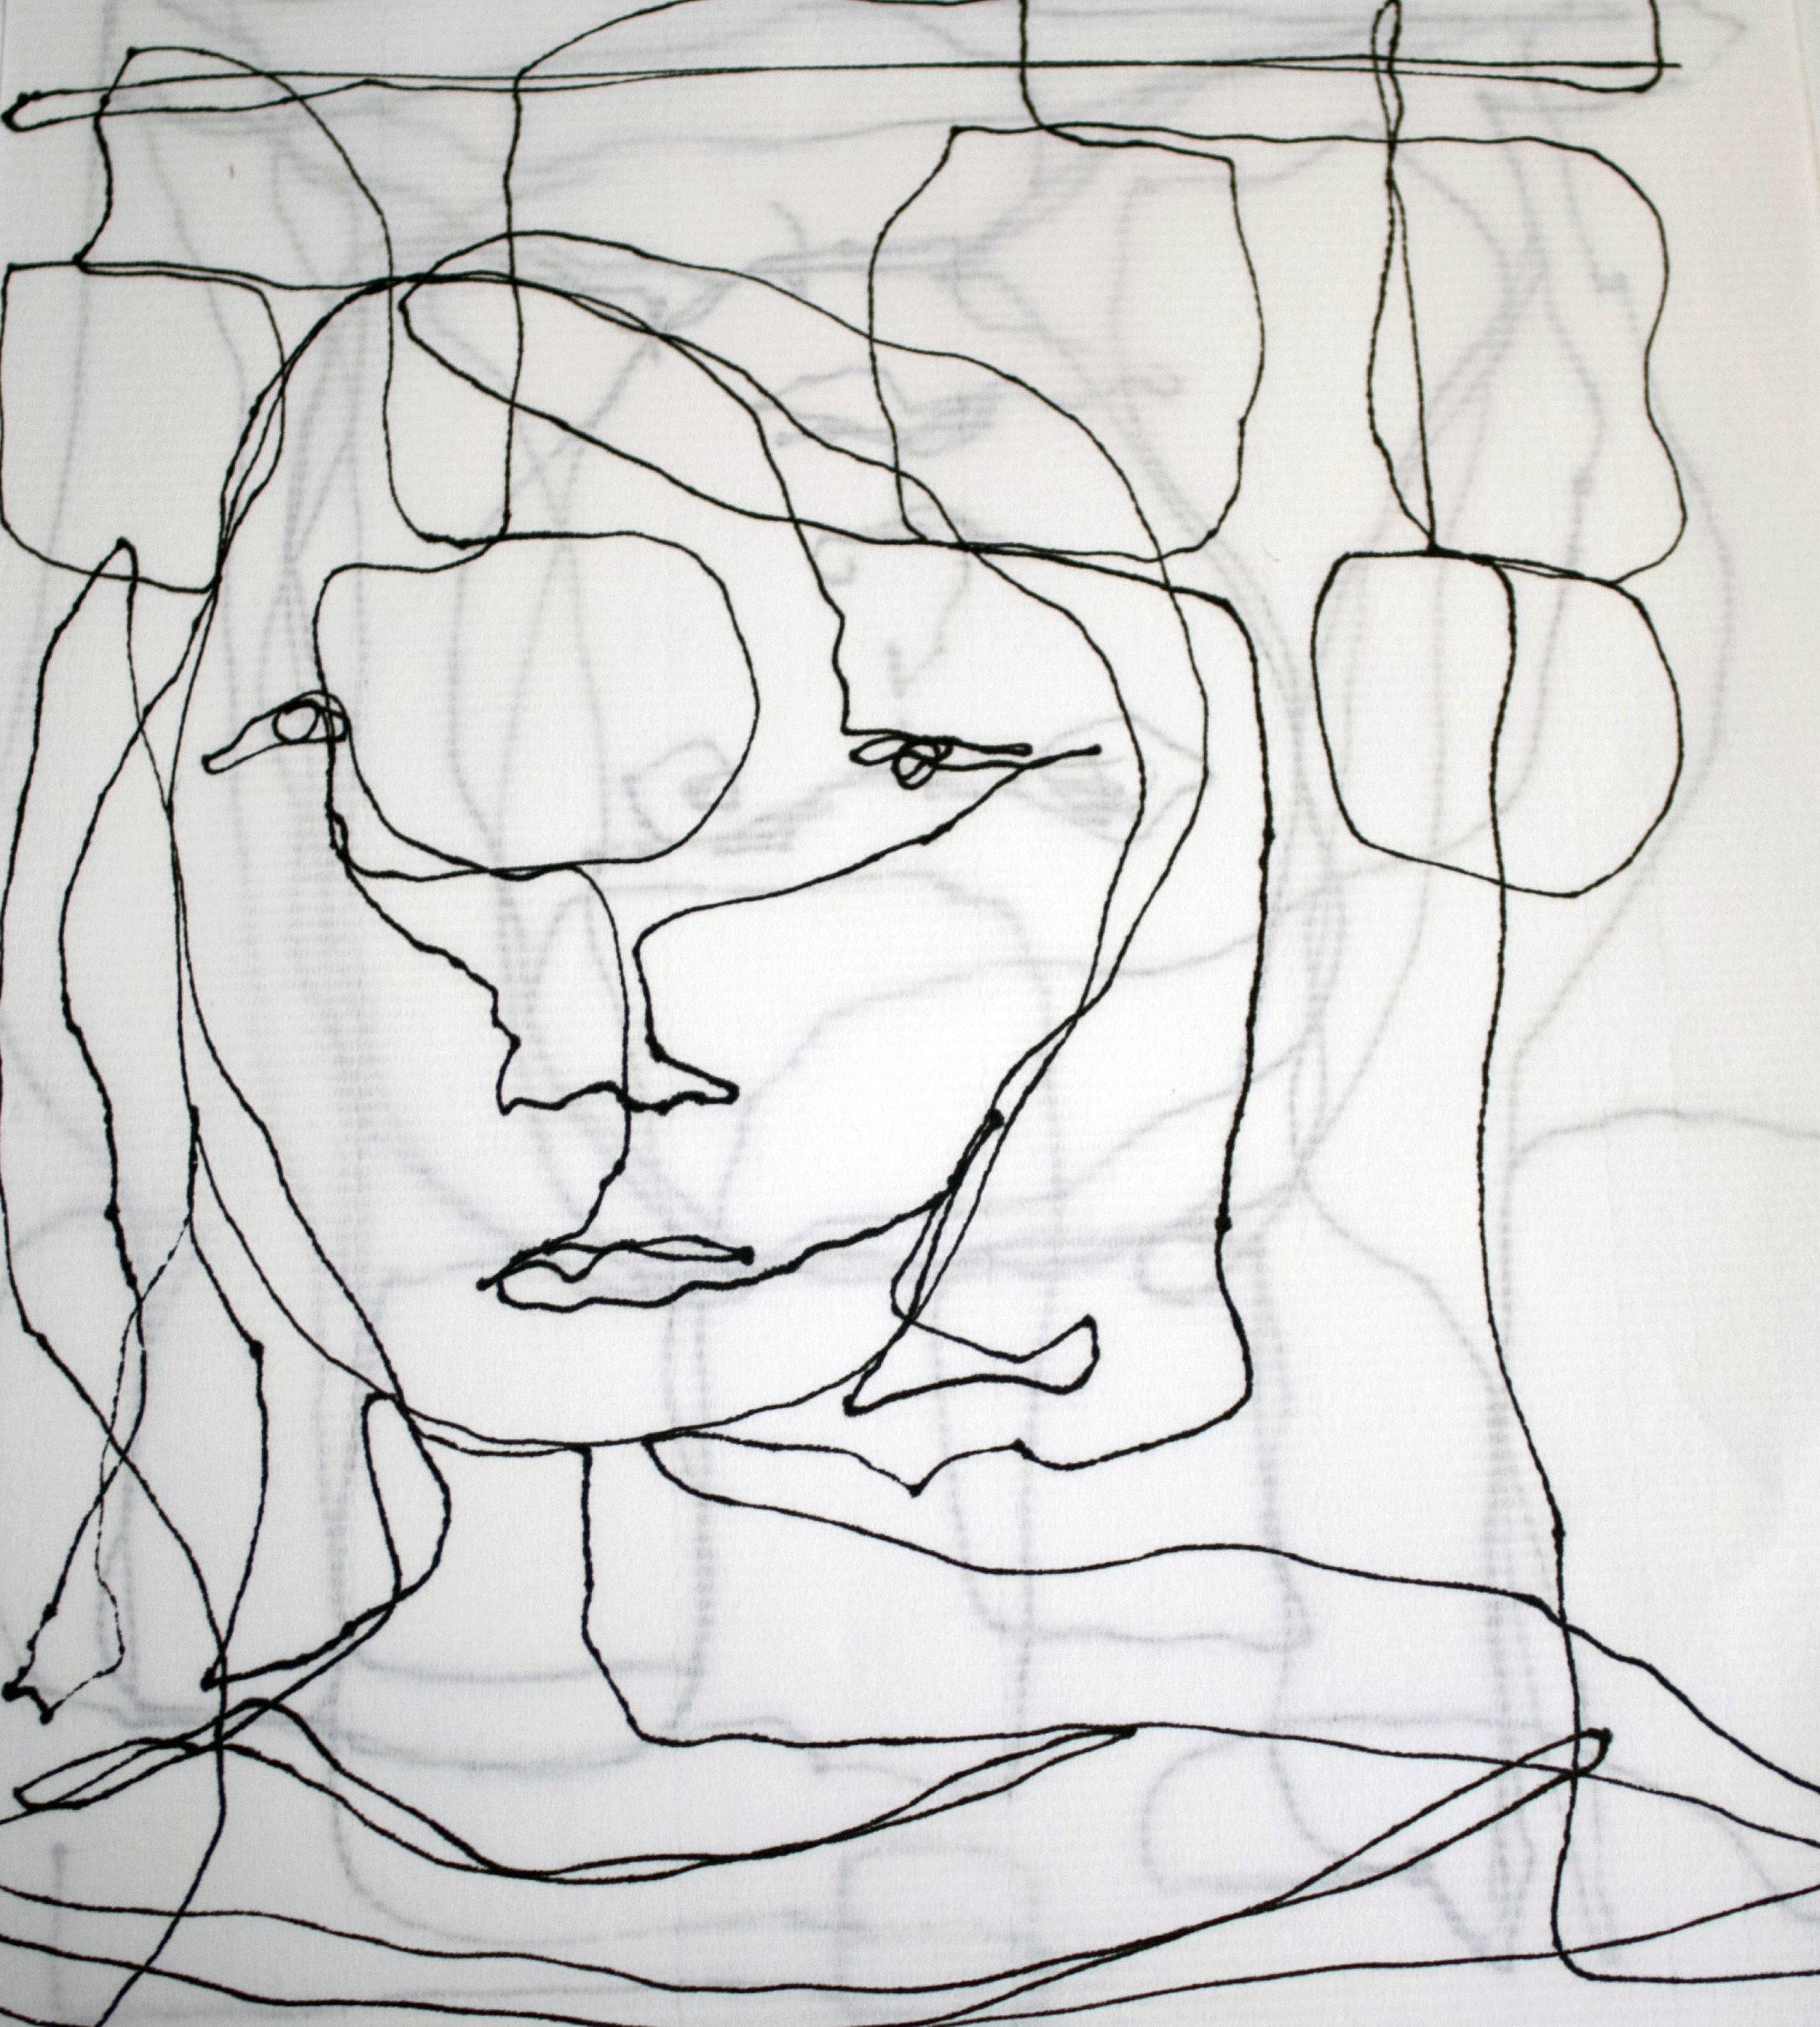 Riza drawing Daria